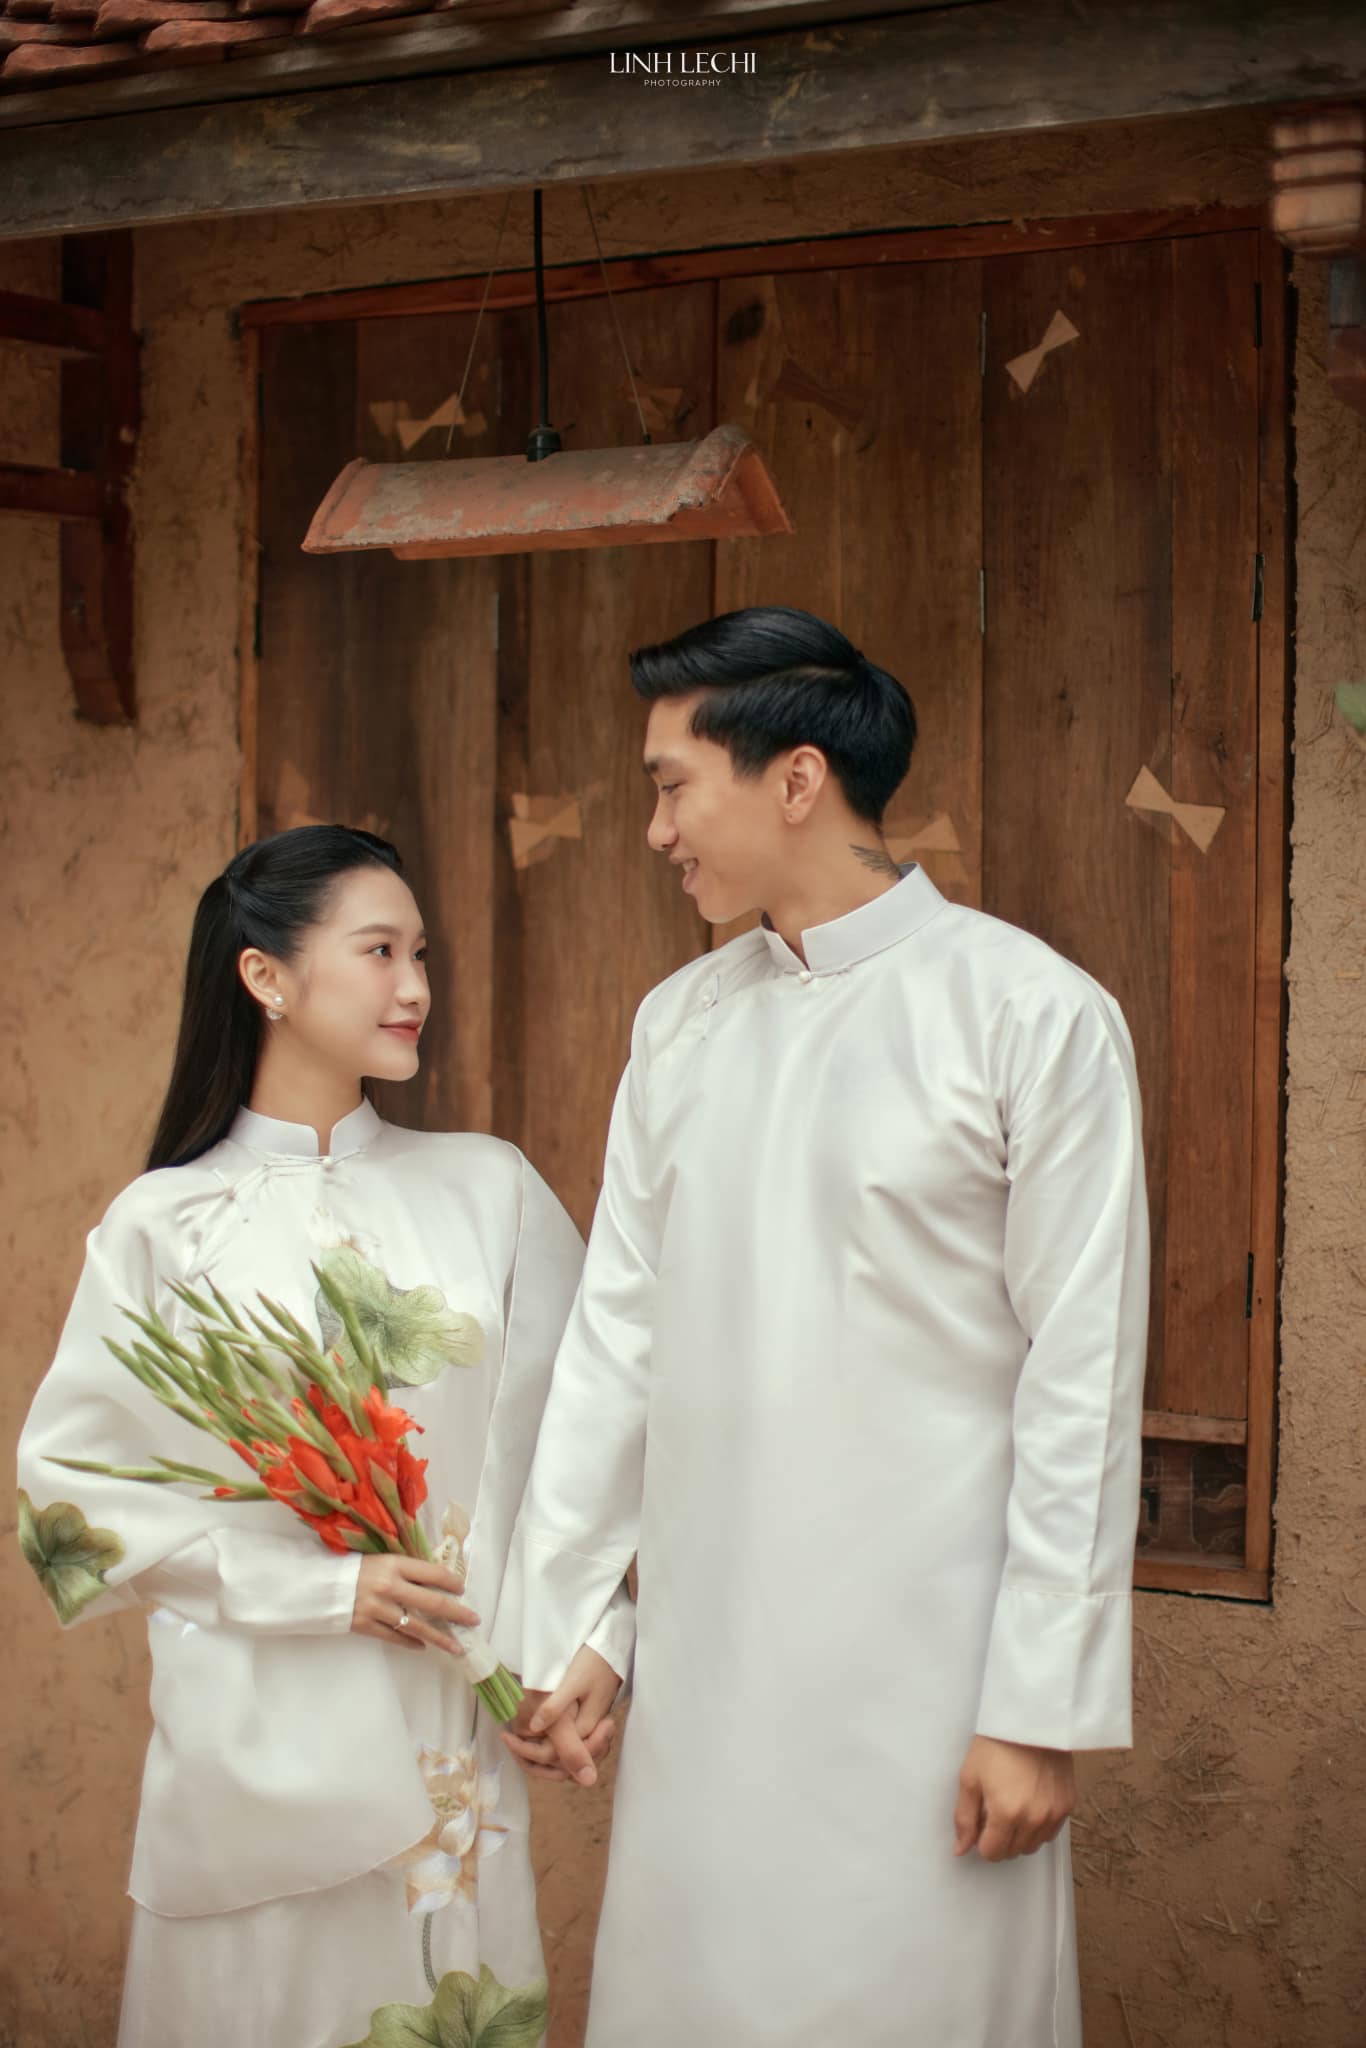 Quang Hải và Chu Thanh Huyền tung ảnh cưới, dân tình lập tức so sánh với Doãn Hải My và Đoàn Văn Hậu - ảnh 3